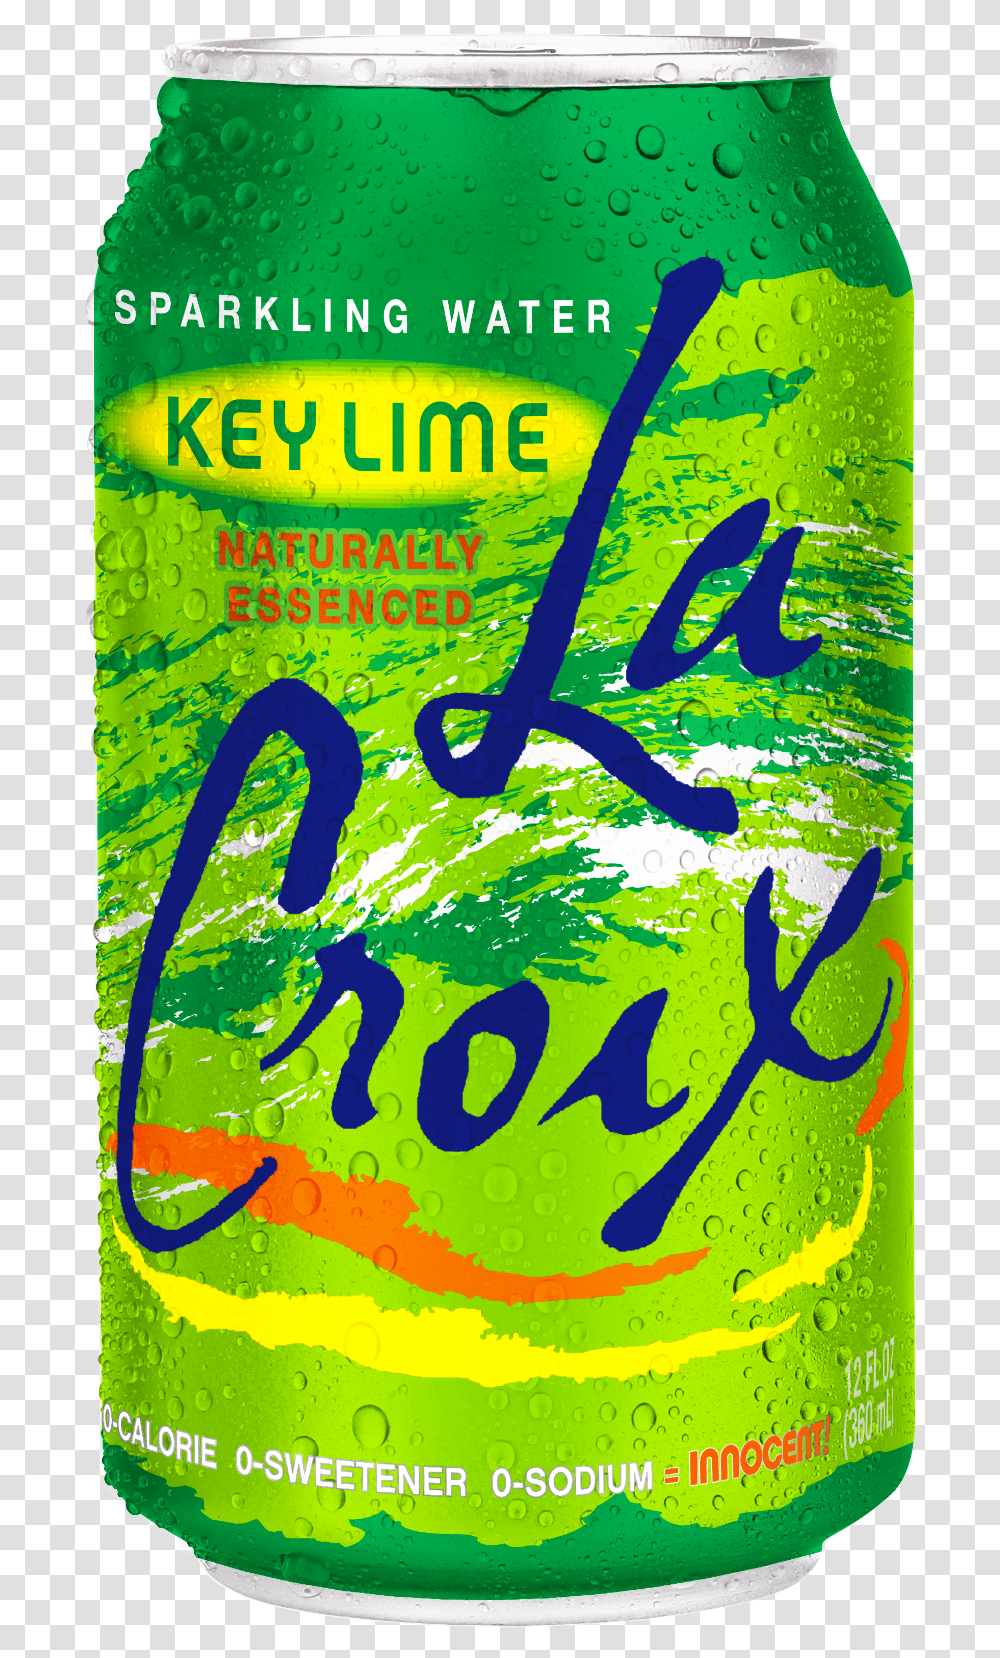 La Croix Key Lime From Lacroix Sparkling Water Inc A La Croix Sparkling Water, Poster, Advertisement, Flyer, Paper Transparent Png